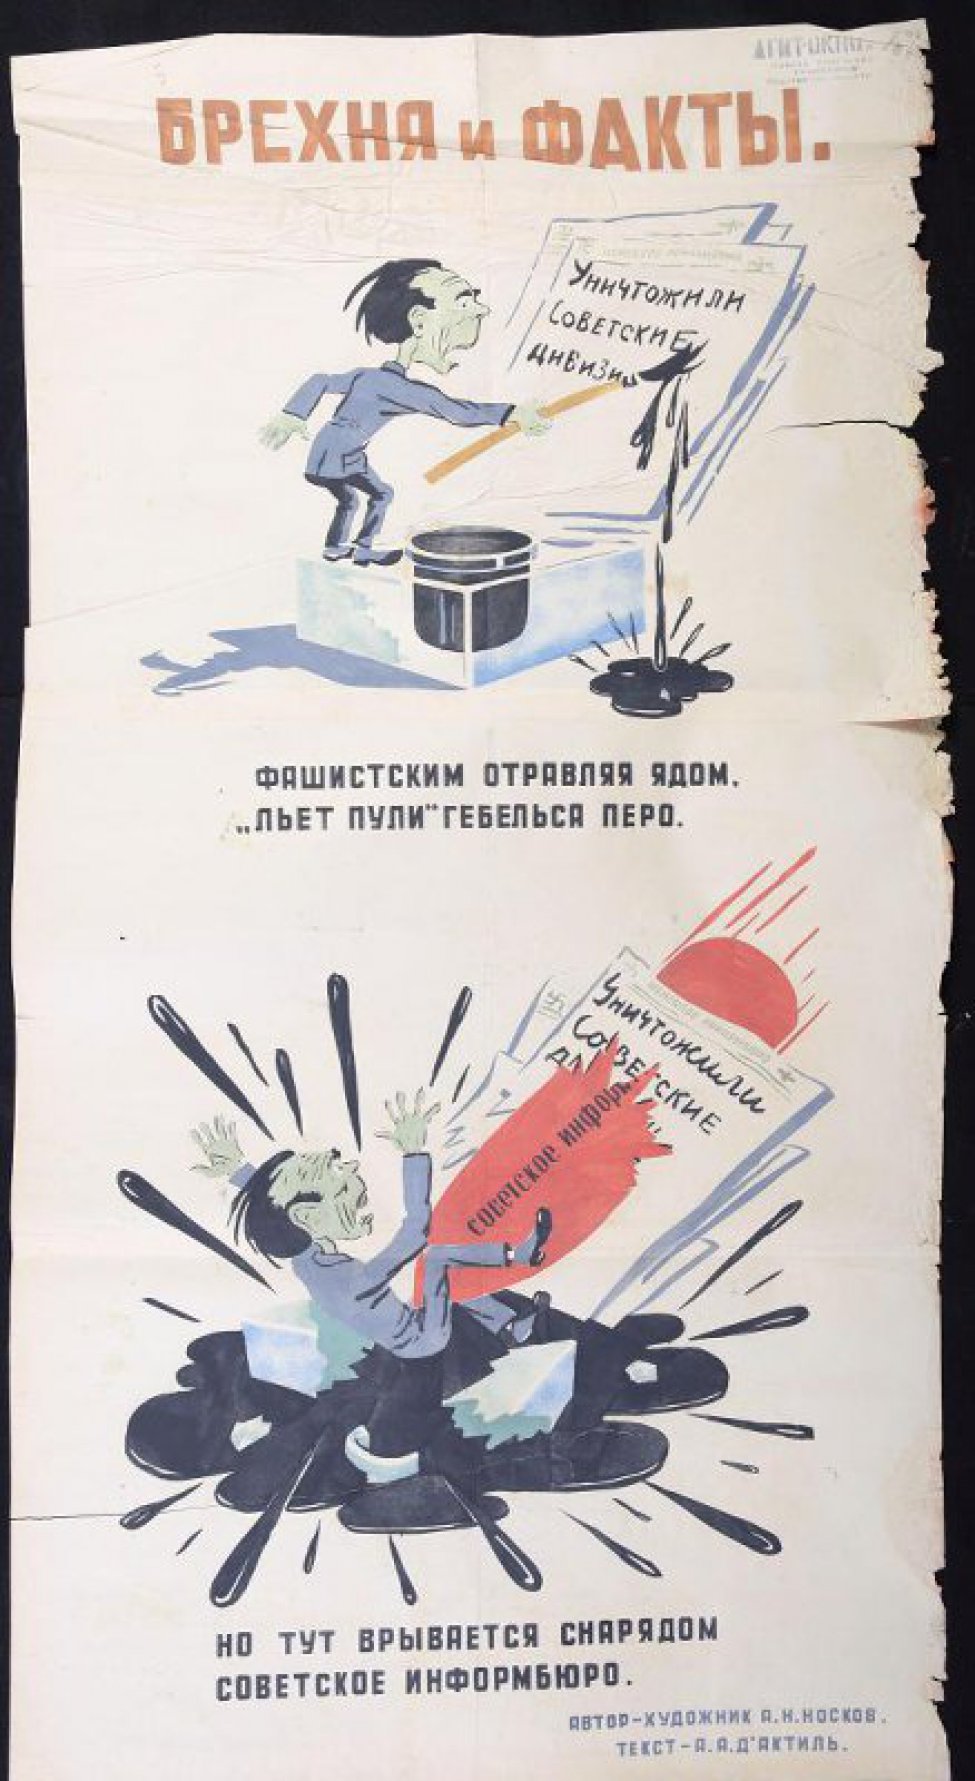 Помещено 2 рисунка: 1) Геббельс стоит на чернильнице и пишет, текст: "фашистским отравляя ядом"; 2) на разбитой чернильнице в луже чернил сидит Геббельс, в него вонзается красный снаряд, текст: "но тут врывается снарядом..."